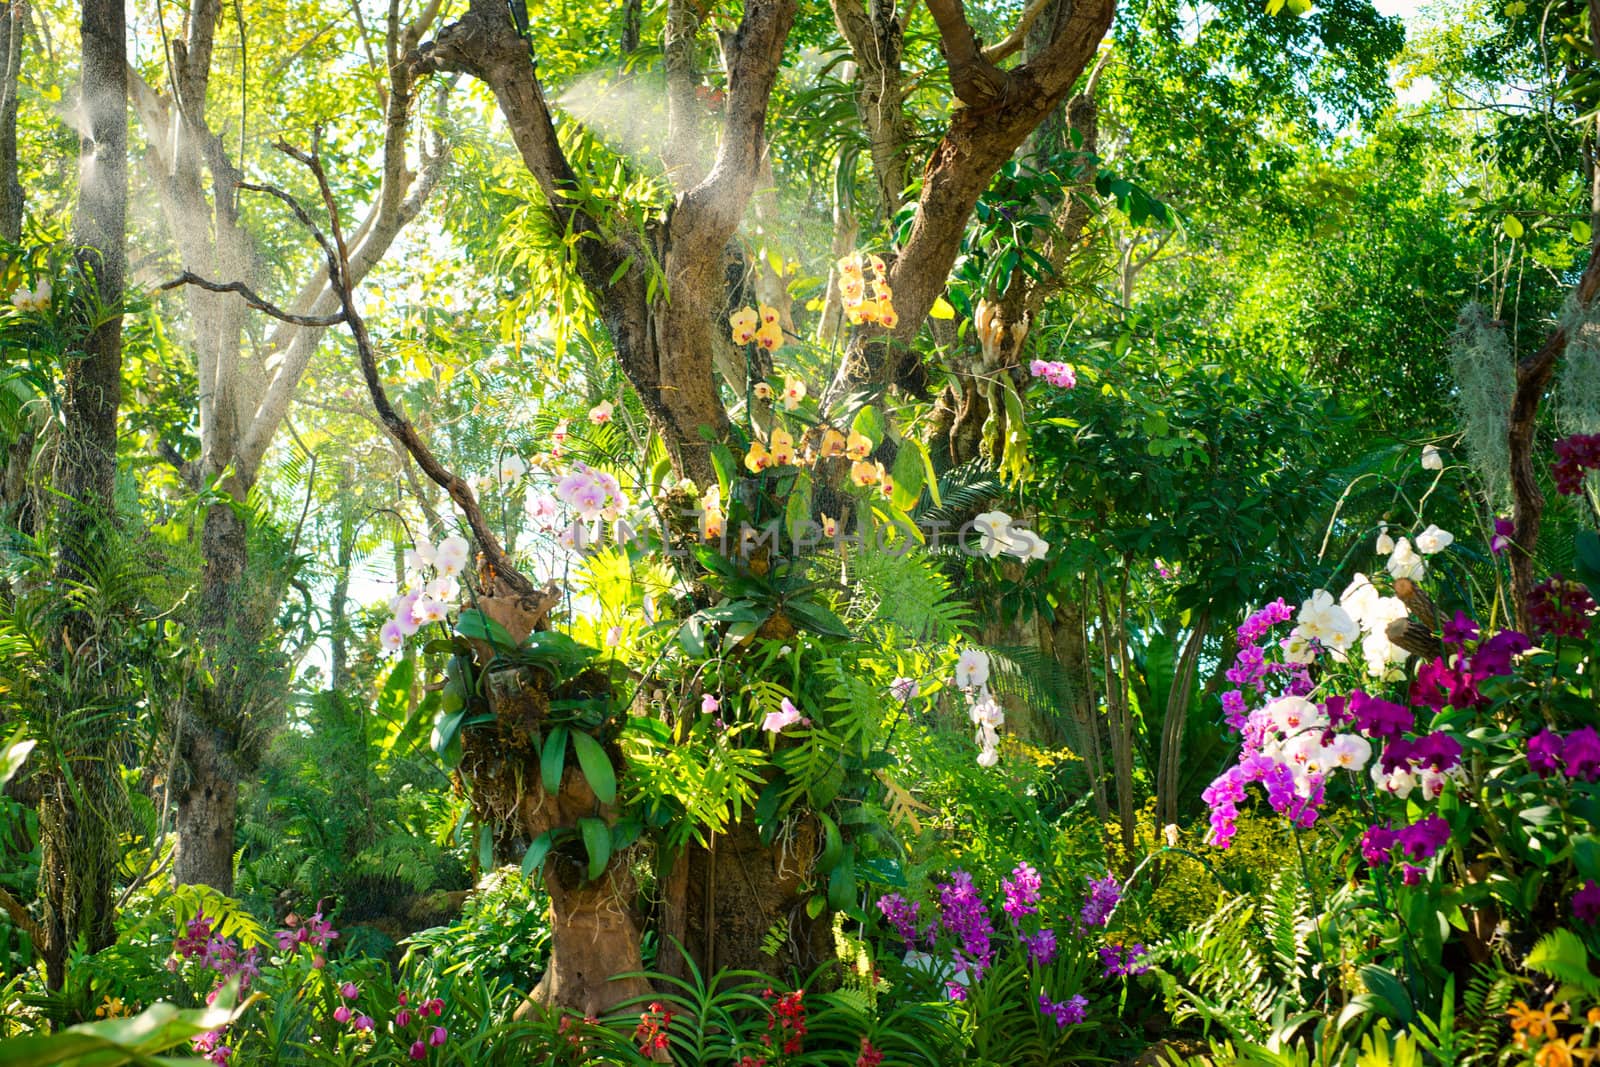 Orchid garden in tropics